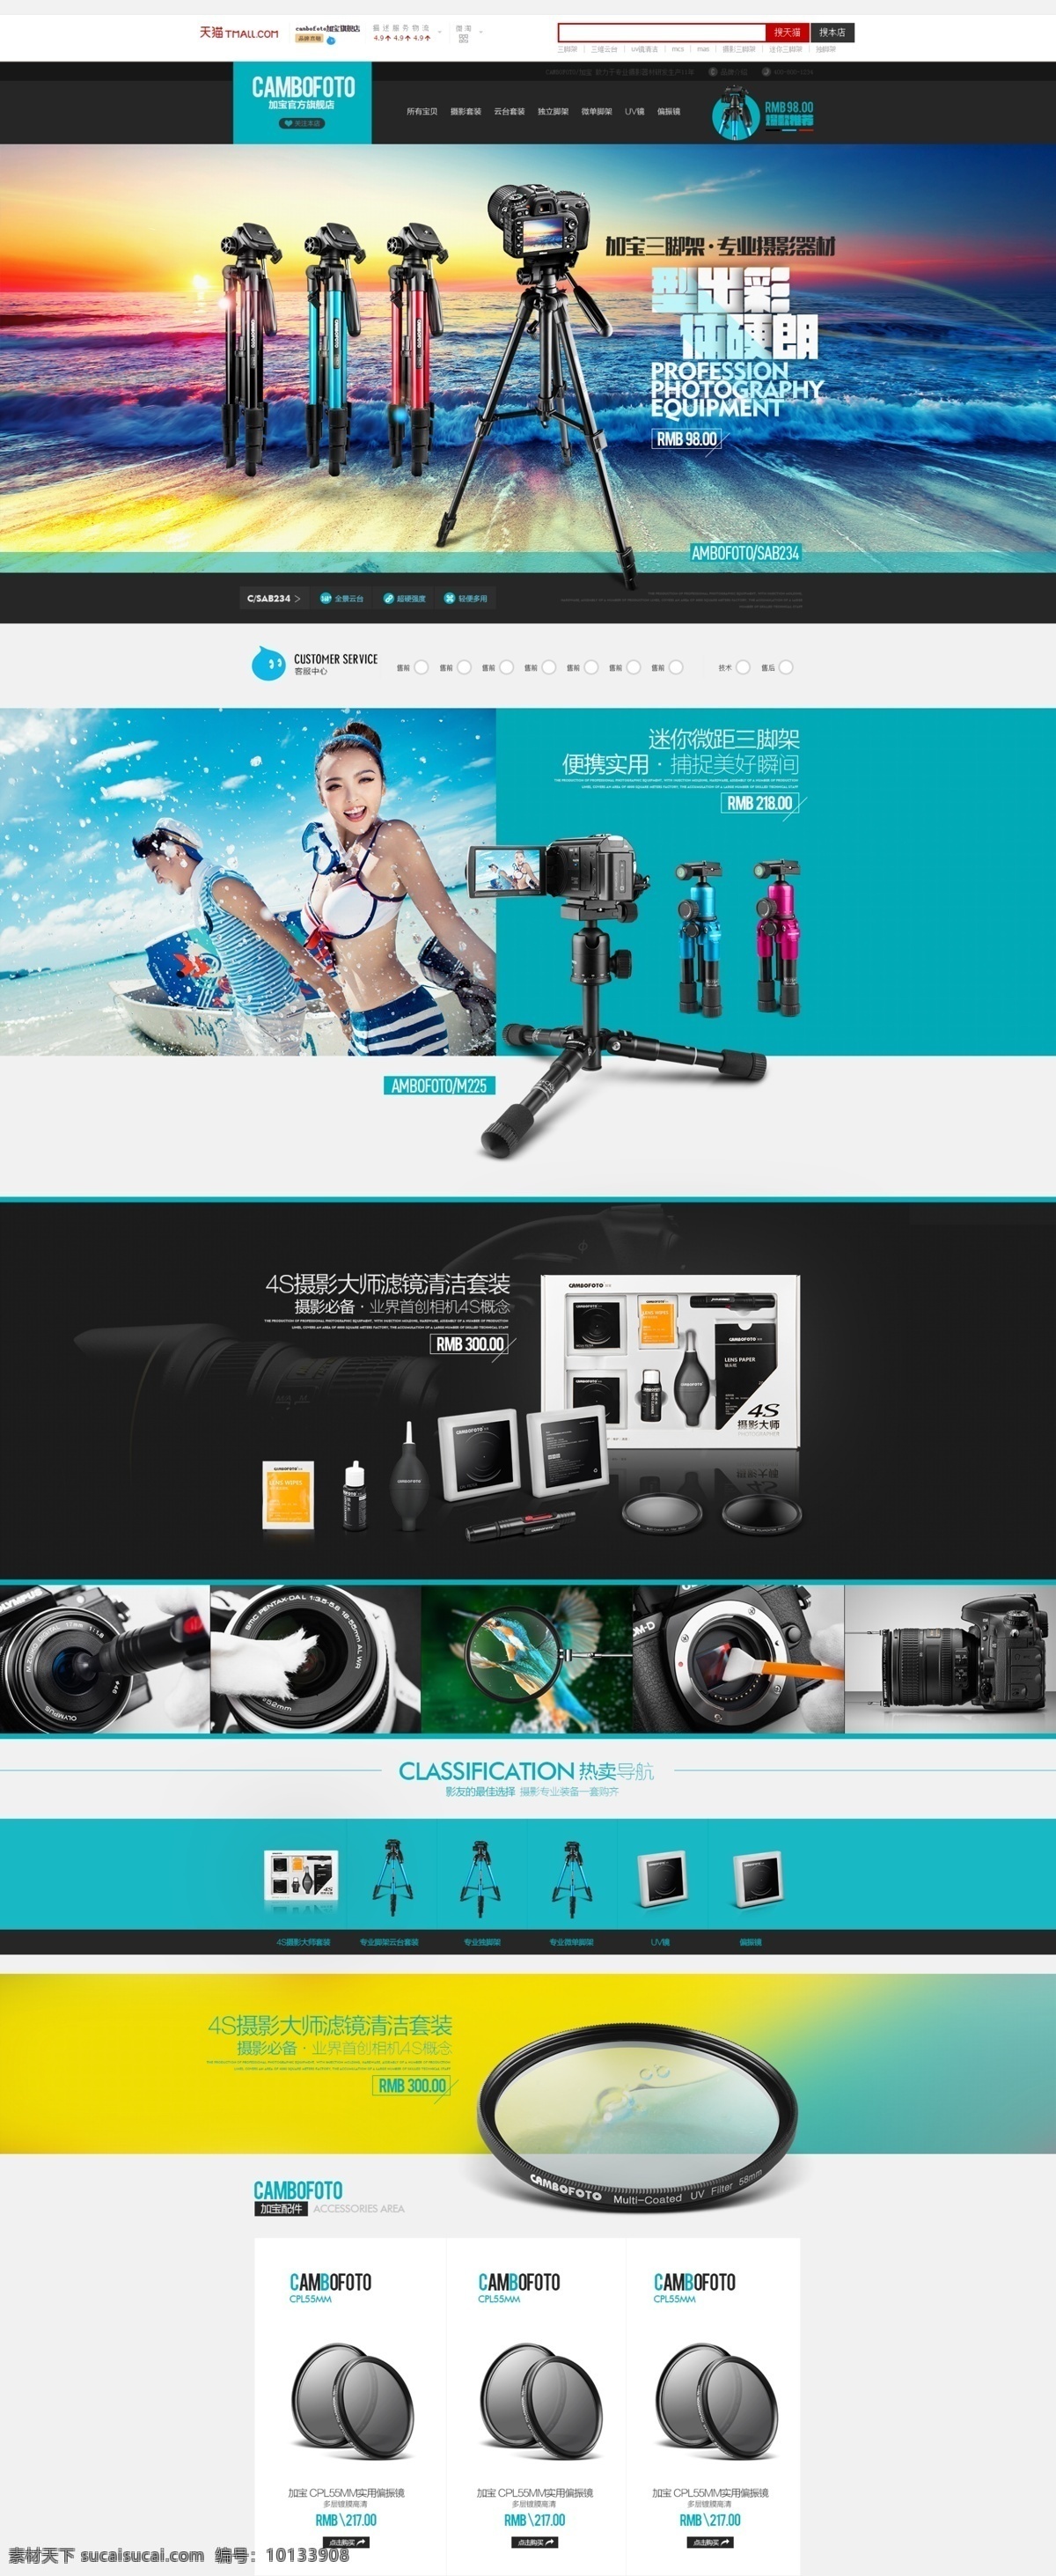 相机产品网页 公司产品展示 psd文件 企业网页 公司网页 网页模版 白色